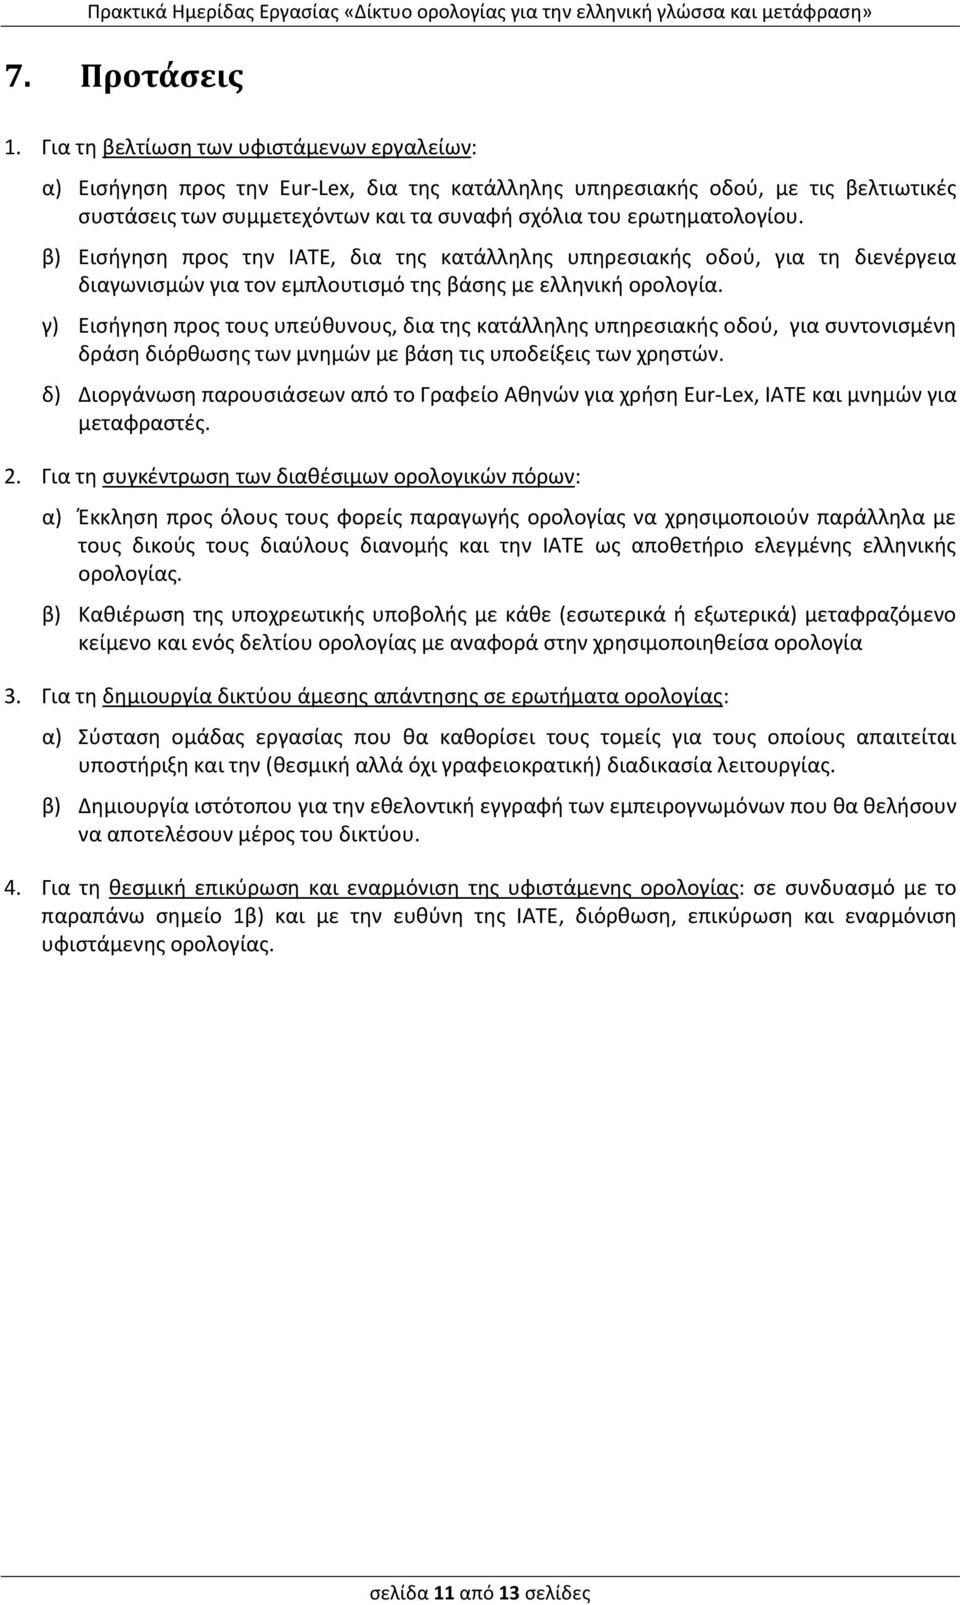 β) Εισήγηση προς την ΙΑΤΕ, δια της κατάλληλης υπηρεσιακής οδού, για τη διενέργεια διαγωνισμών για τον εμπλουτισμό της βάσης με ελληνική ορολογία.